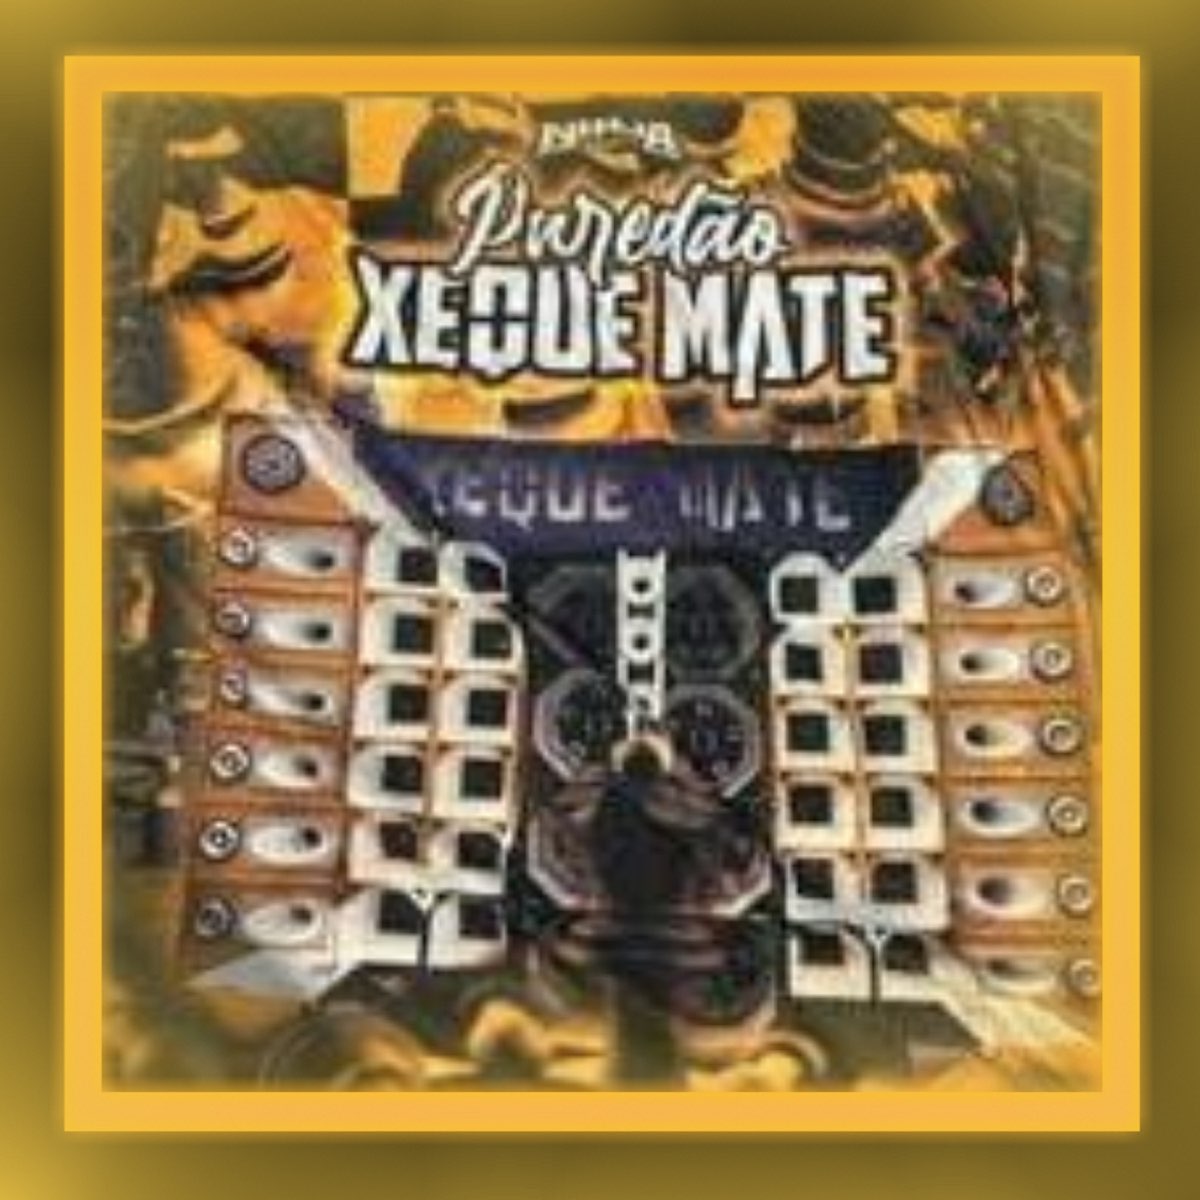 Paredão Xeque Mate - Single - Album by DJ CAIOZIN, MC GUH B13 & bigode mc -  Apple Music